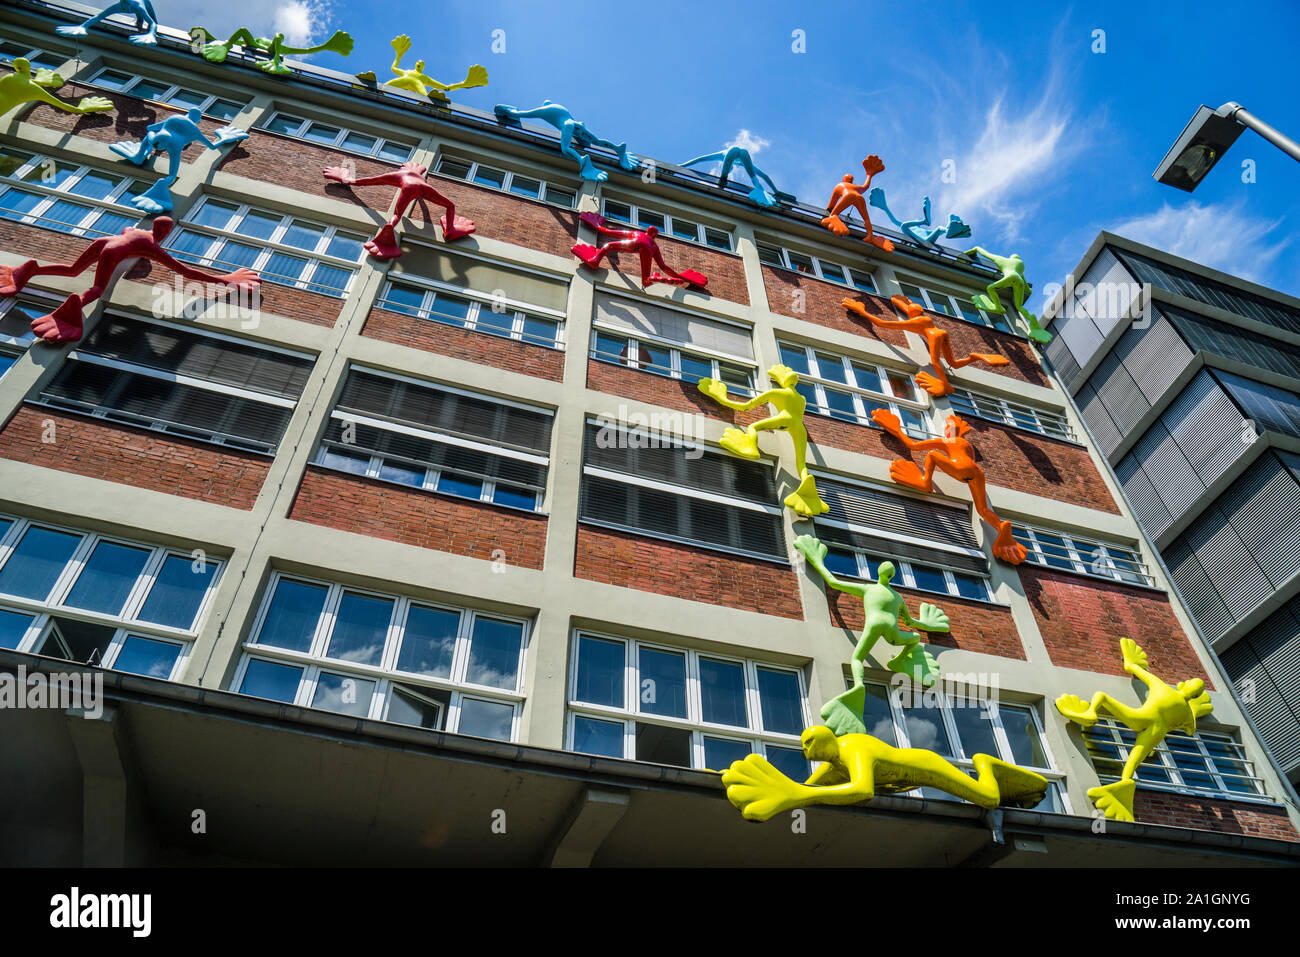 24 klettern Flossi - Skulpturen in den Farben Gelb, Rot, Blau, Grün und Blau durch die Stuttgarter Künstlerin rosalie am ehemaligen Roggendorf Lager an julo - Stockfoto